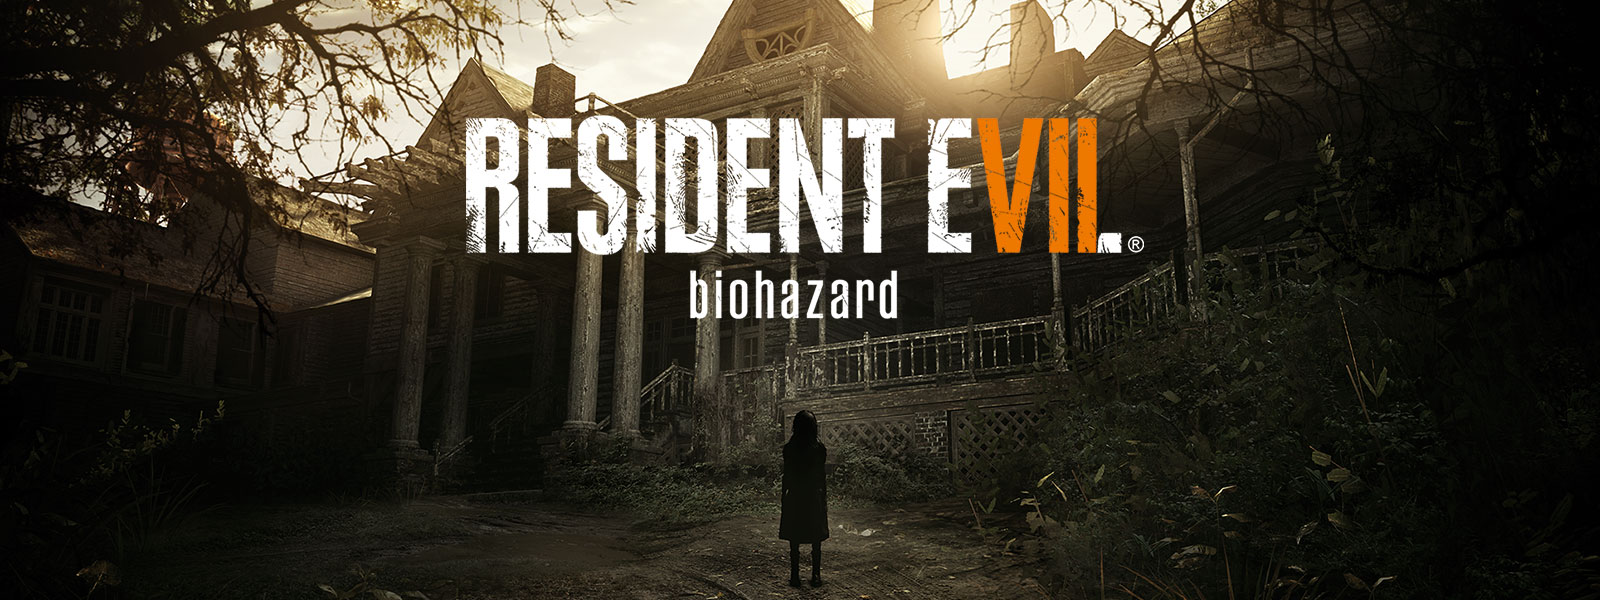 유령의 집 앞에 서 있는 오싹한 소녀가 그려진 Resident Evil 7 biohazard 골드 에디션 박스샷